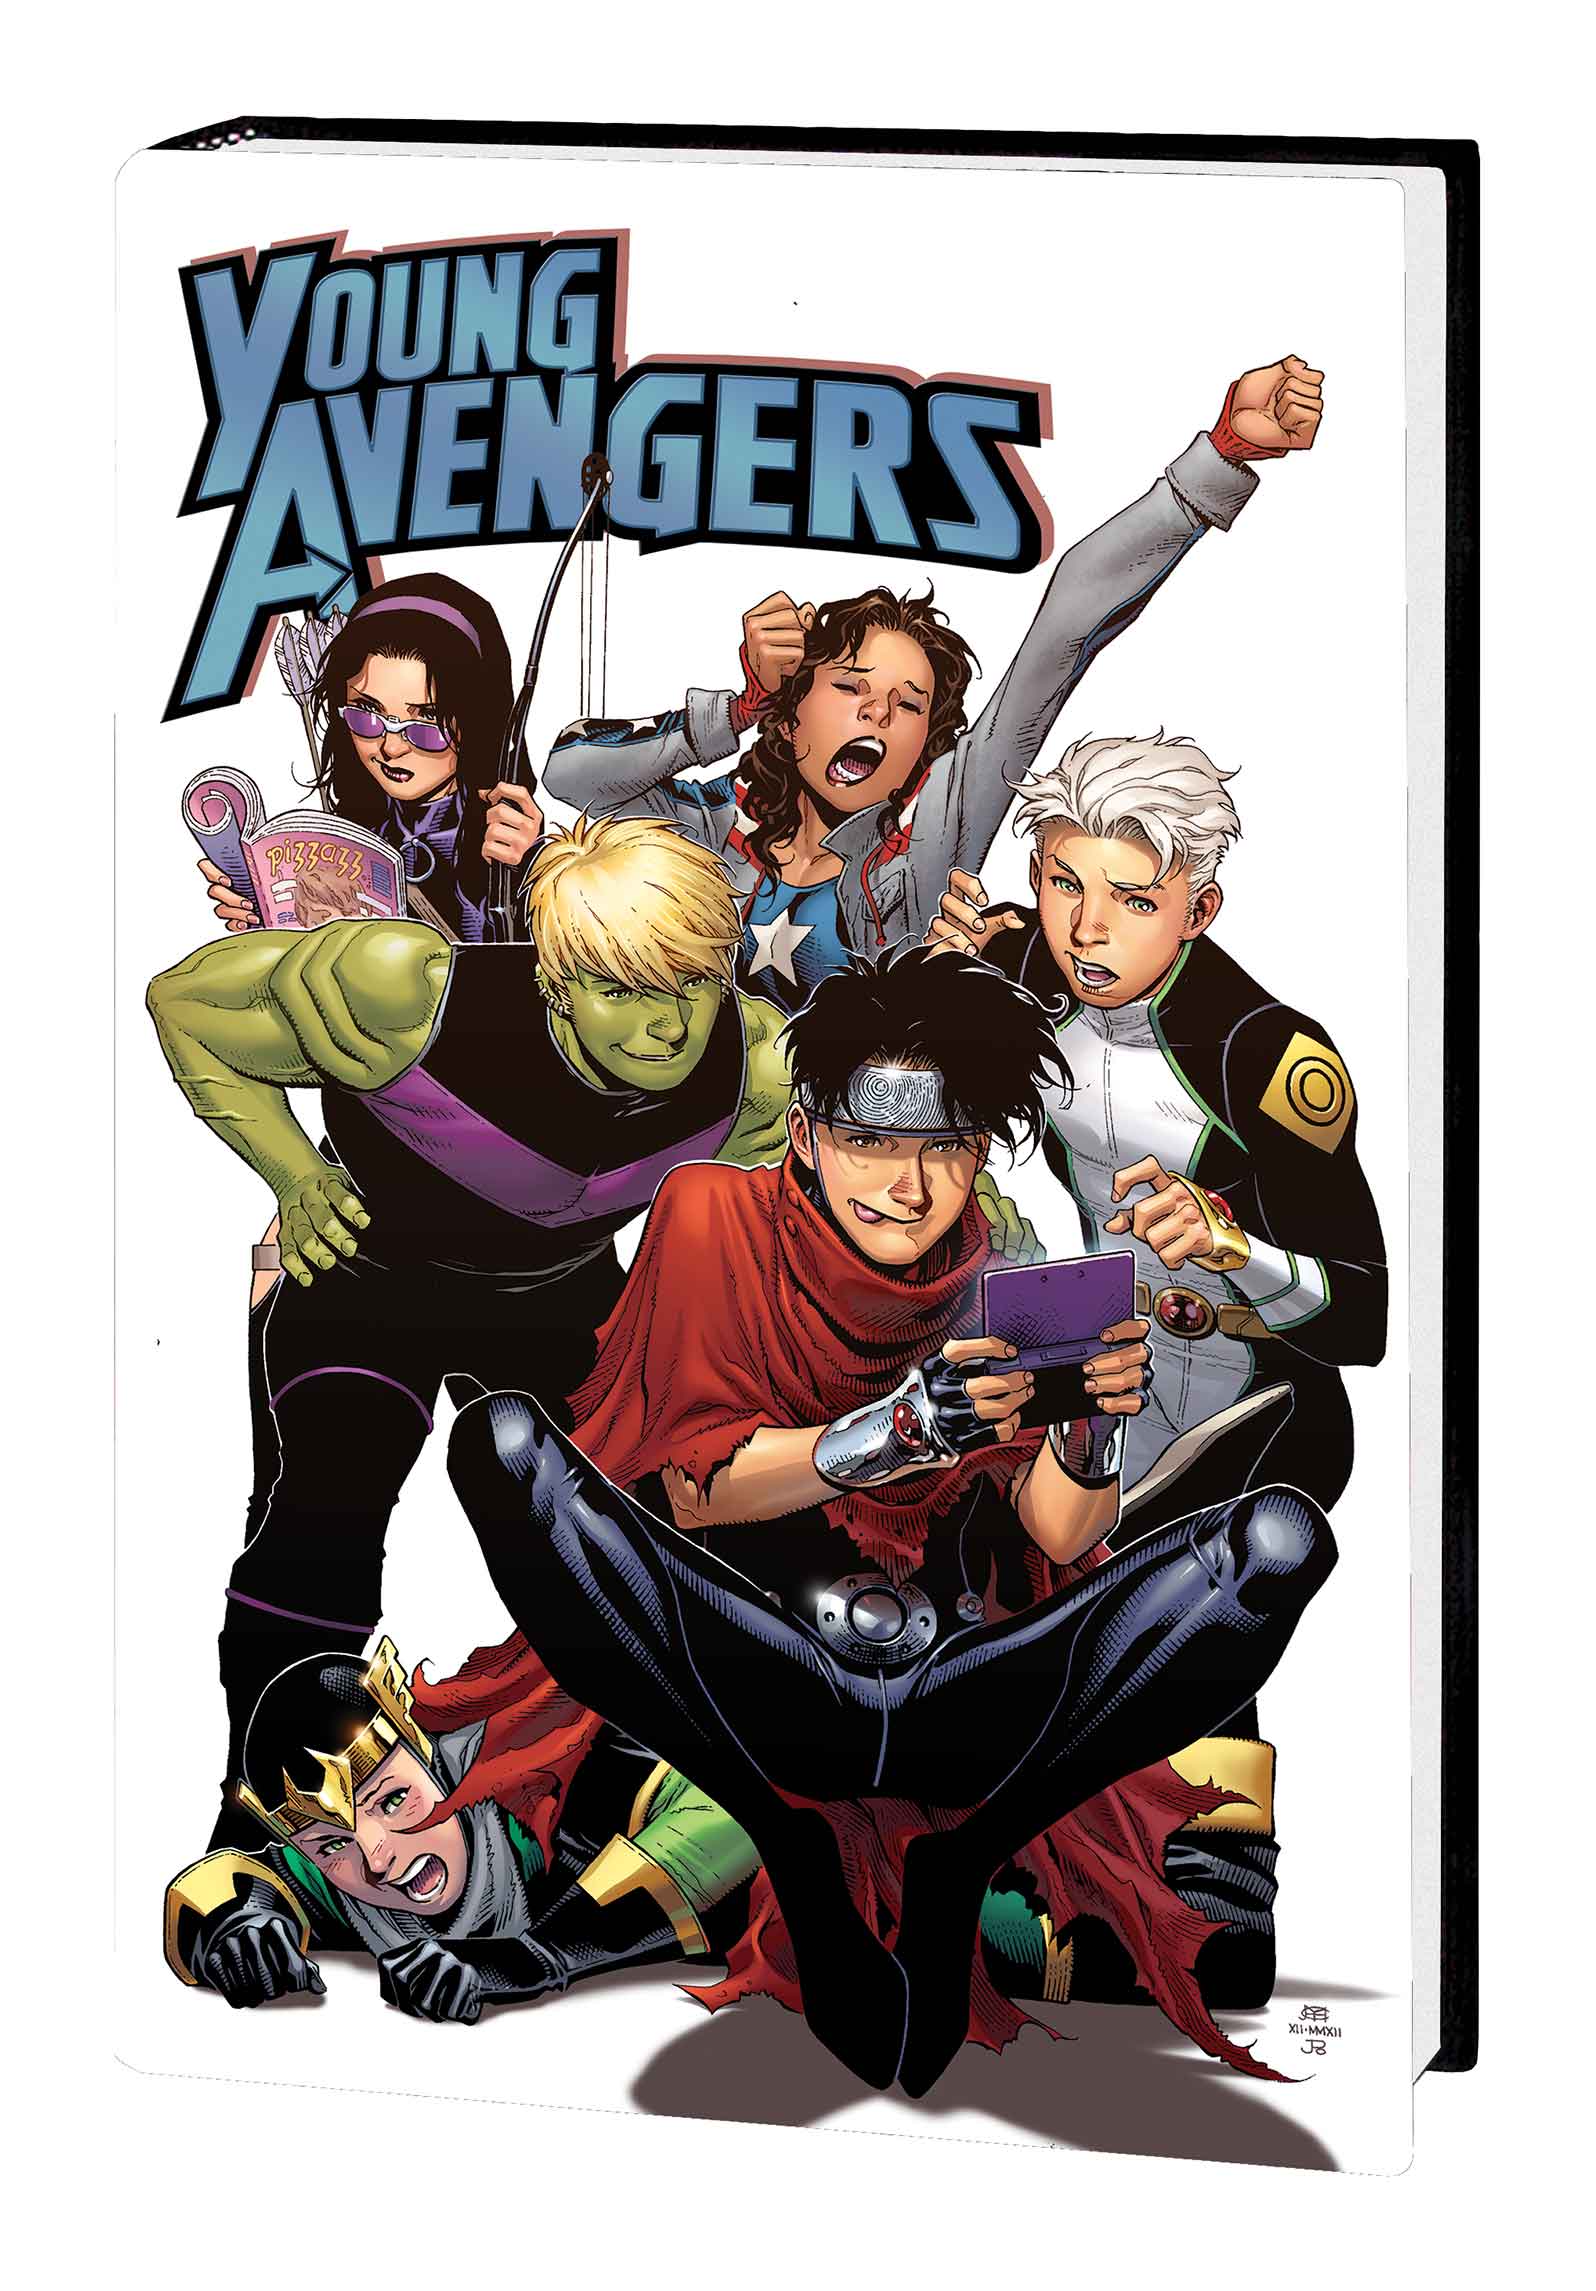 Young Avengers by Kieron Gillen & Jamie Mckelvie (Hardcover)